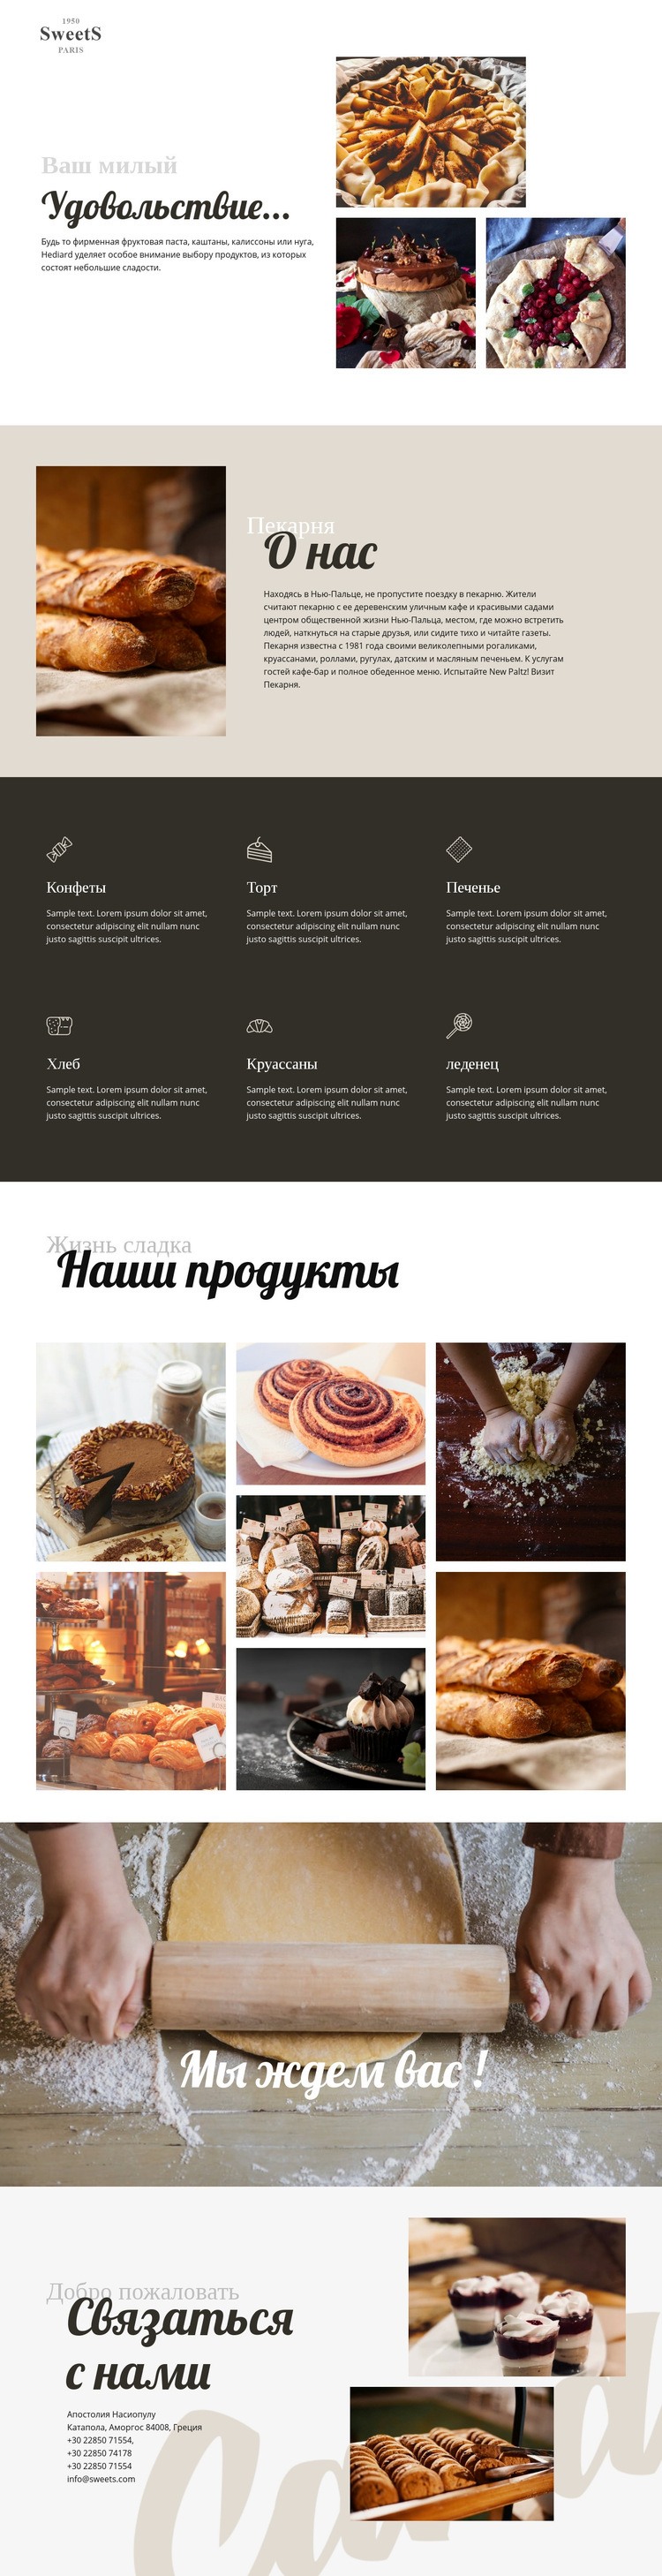 Торты и выпечка Шаблон Joomla